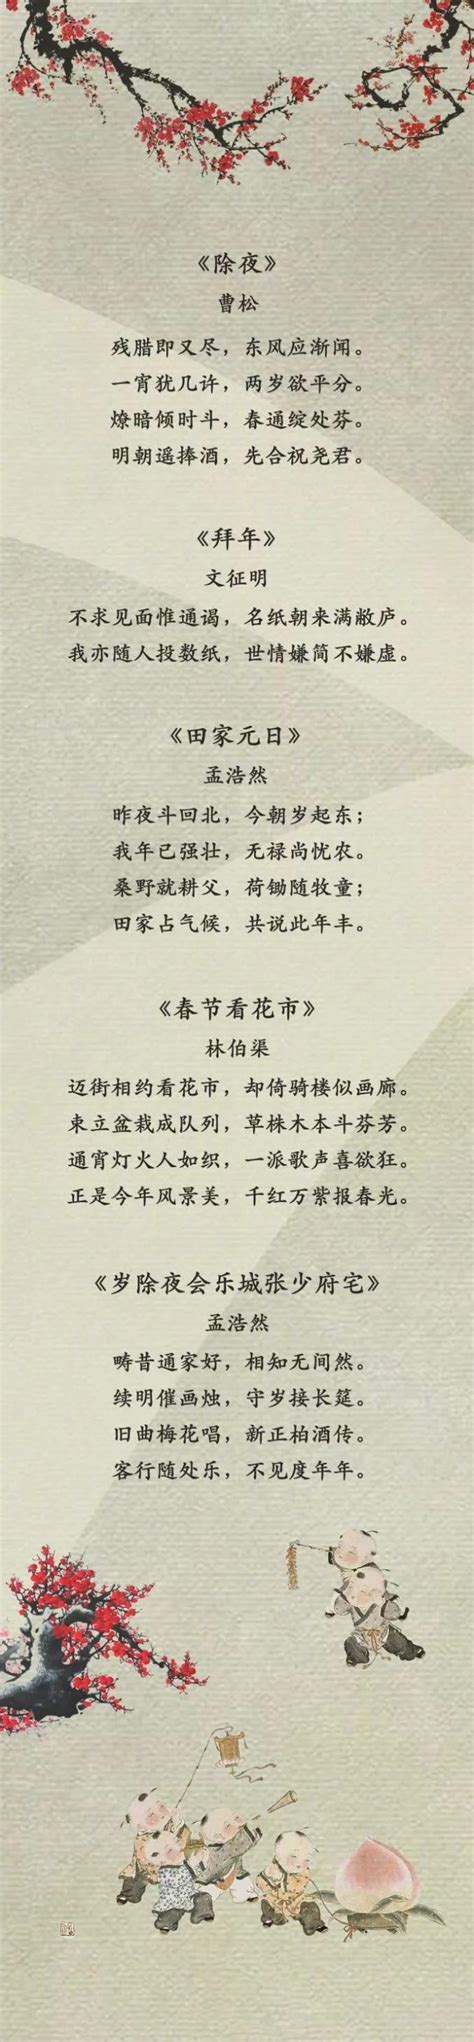 春节有关的古诗词